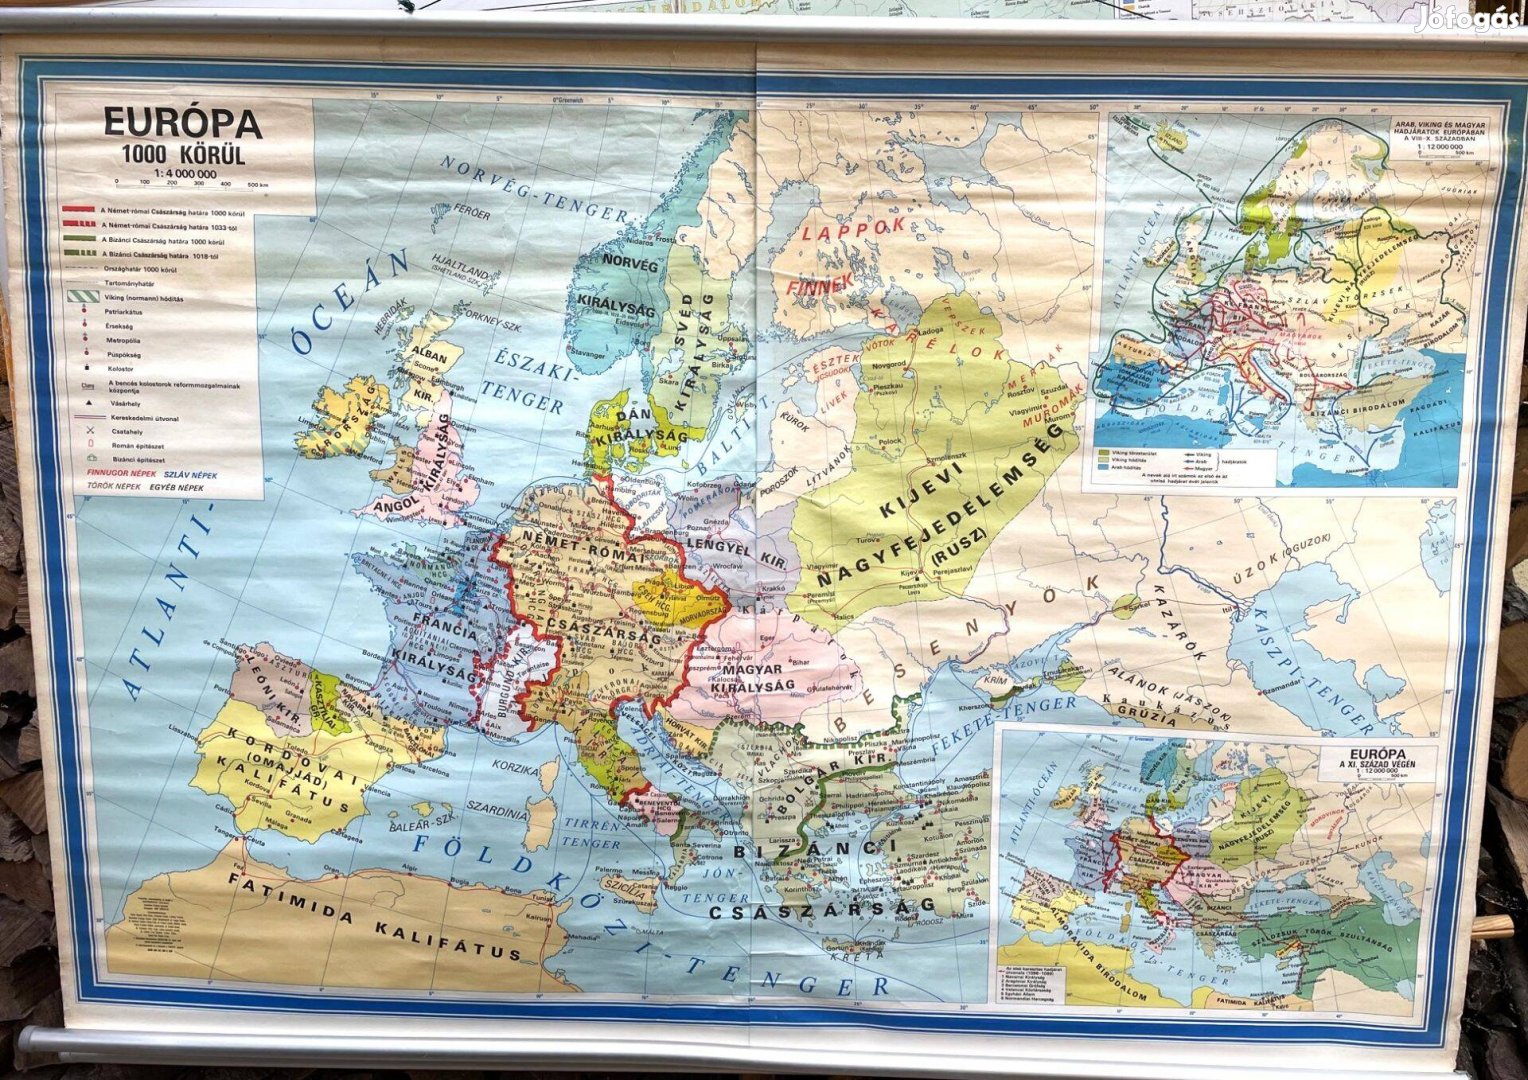 Európa nagyméretű iskolai fali térkép - Eu 1000 körül és a XV. század